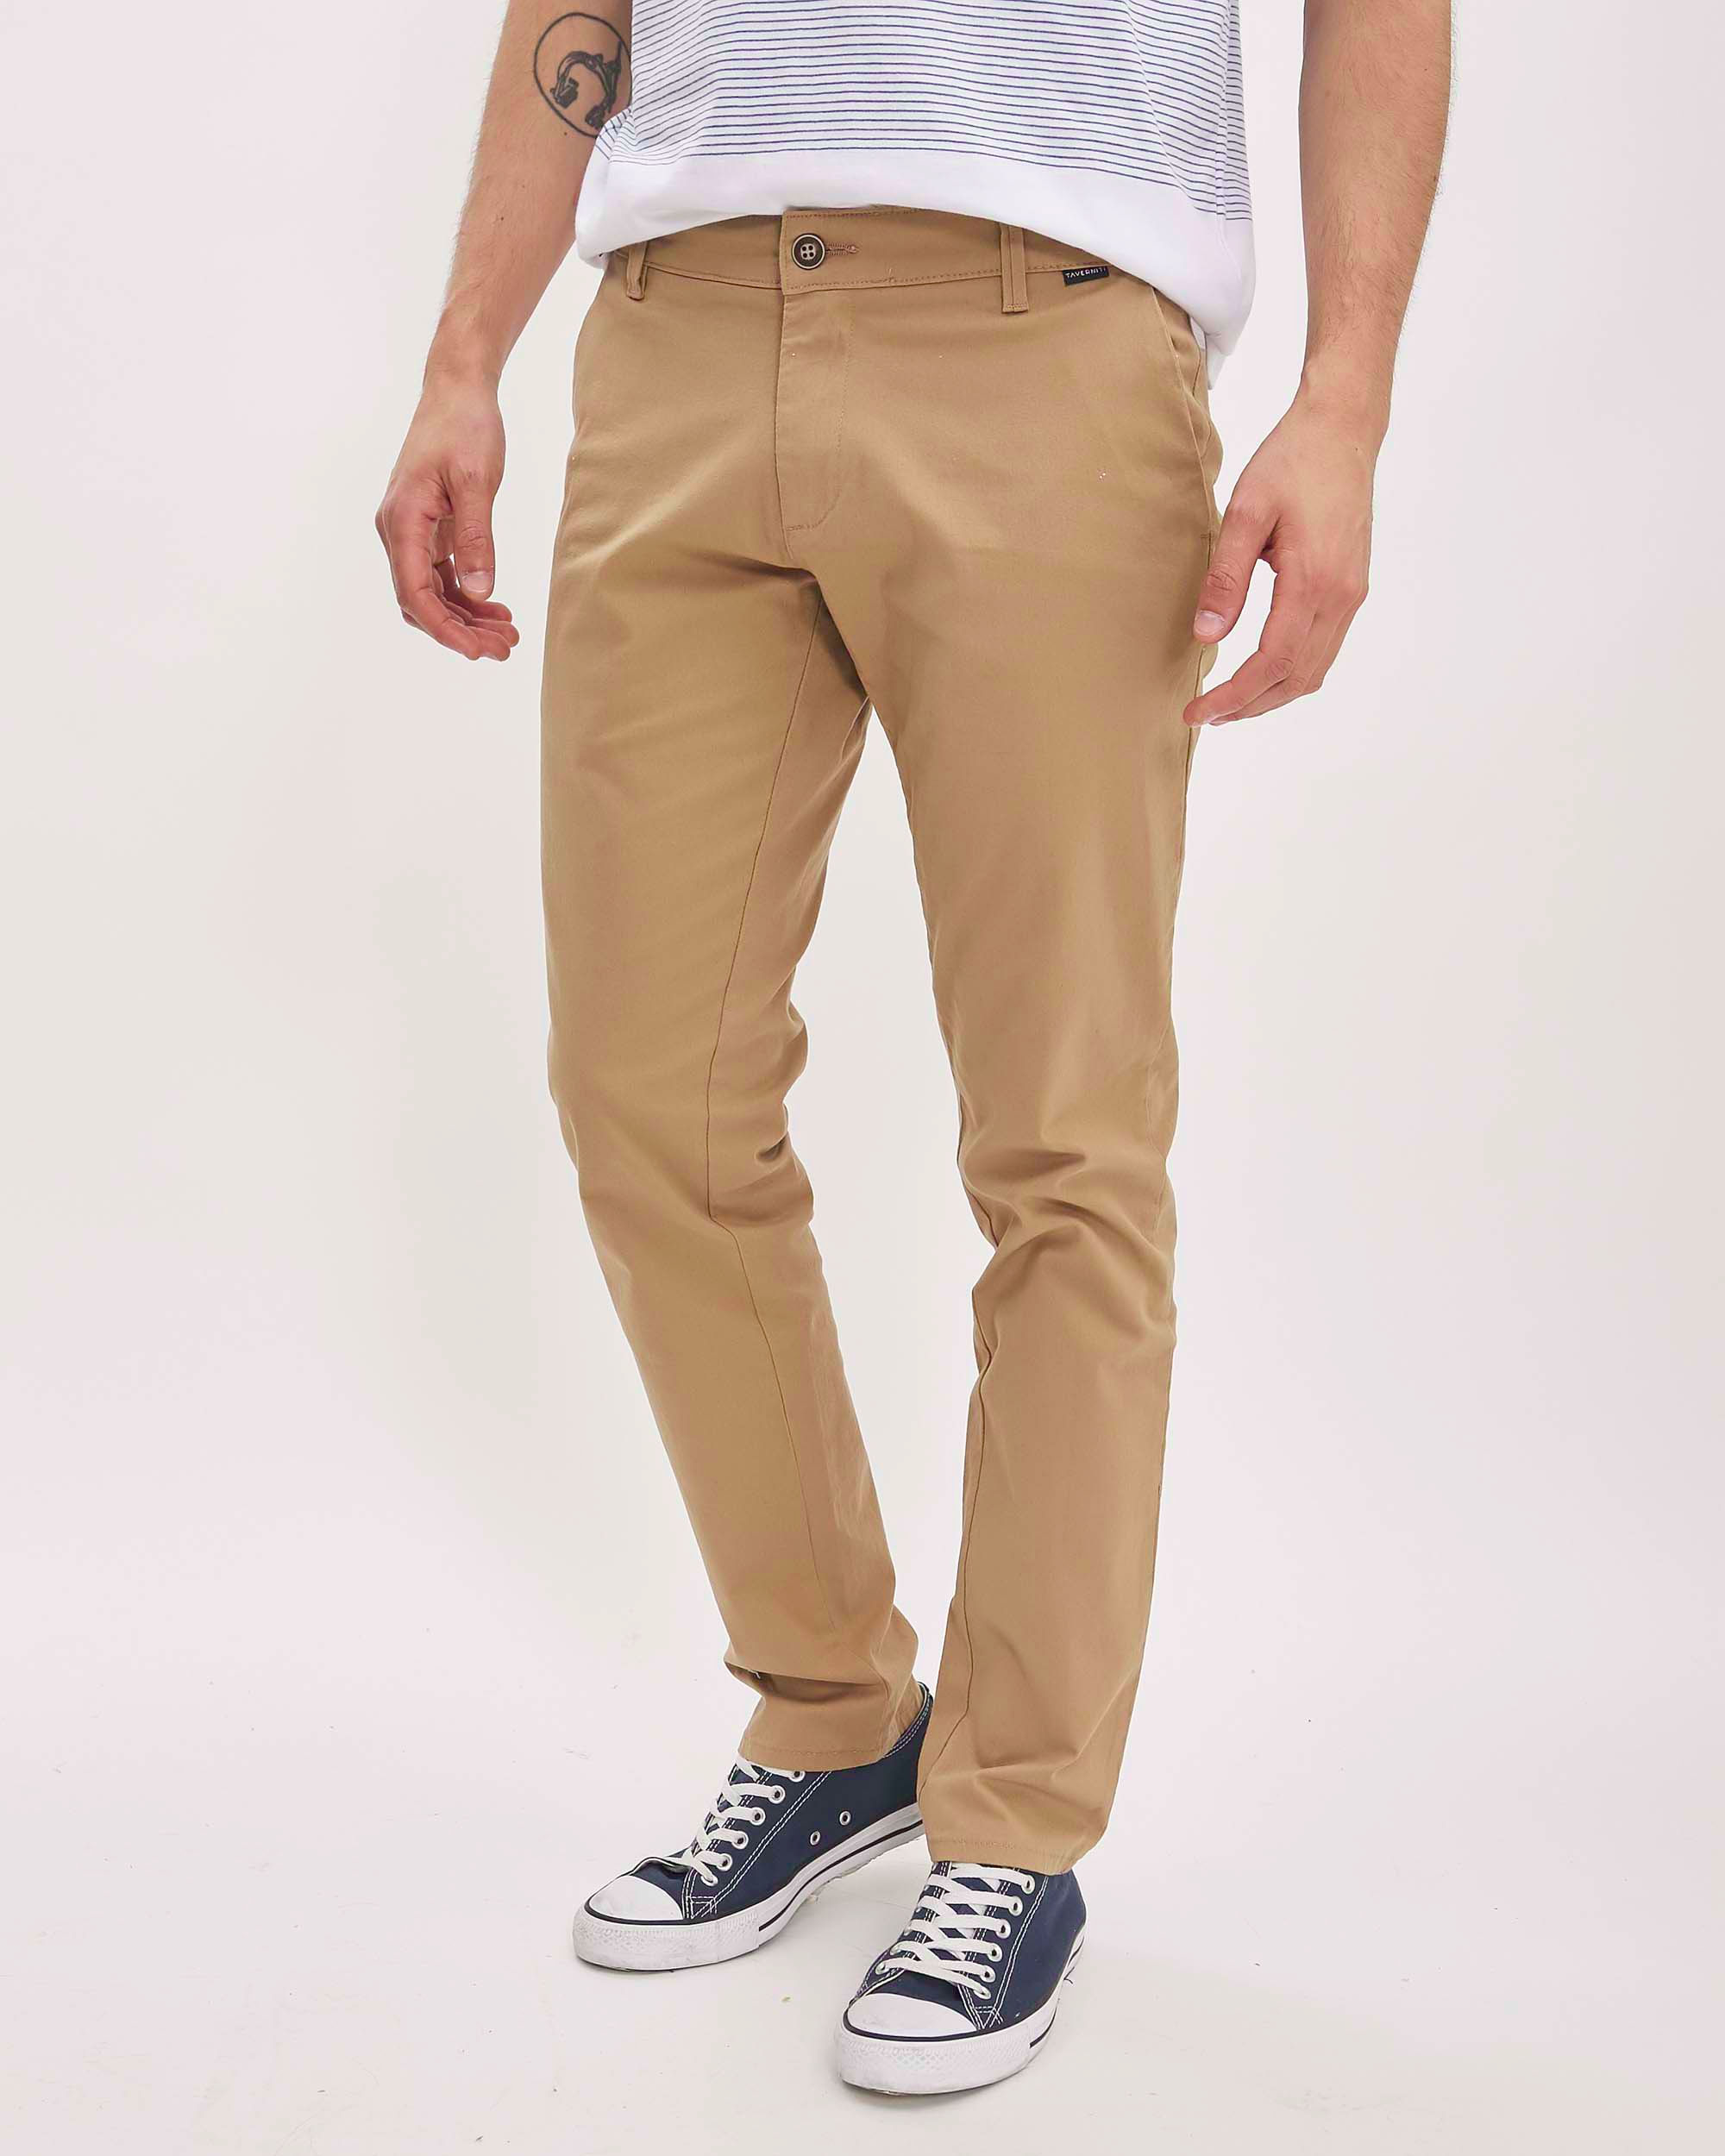 Pantalon Drill, Tela Tafetan con Bolsillo de Parche 5187 – Peroxido Jeans